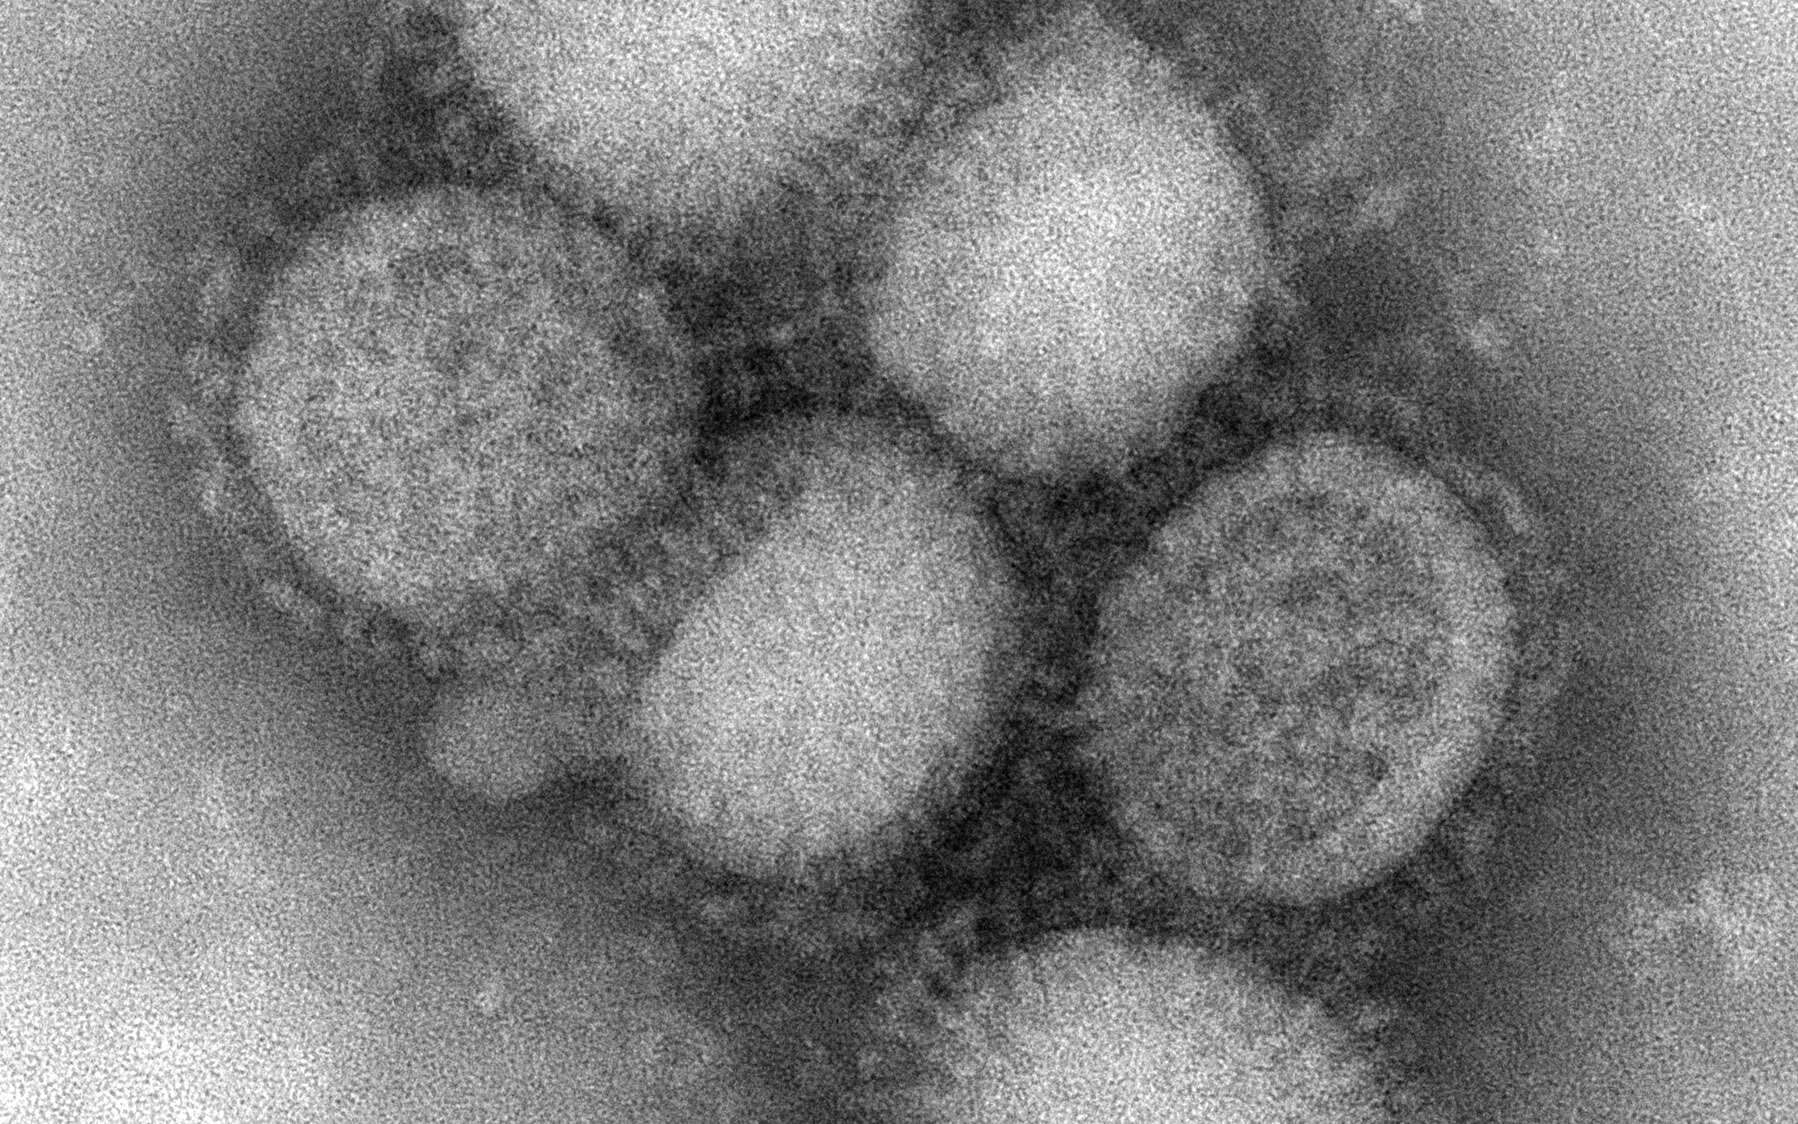 Le virus A(H1N1). Des millions de personnes l'ont rencontré et vaincu. © Centers for Disease Control and Prevention